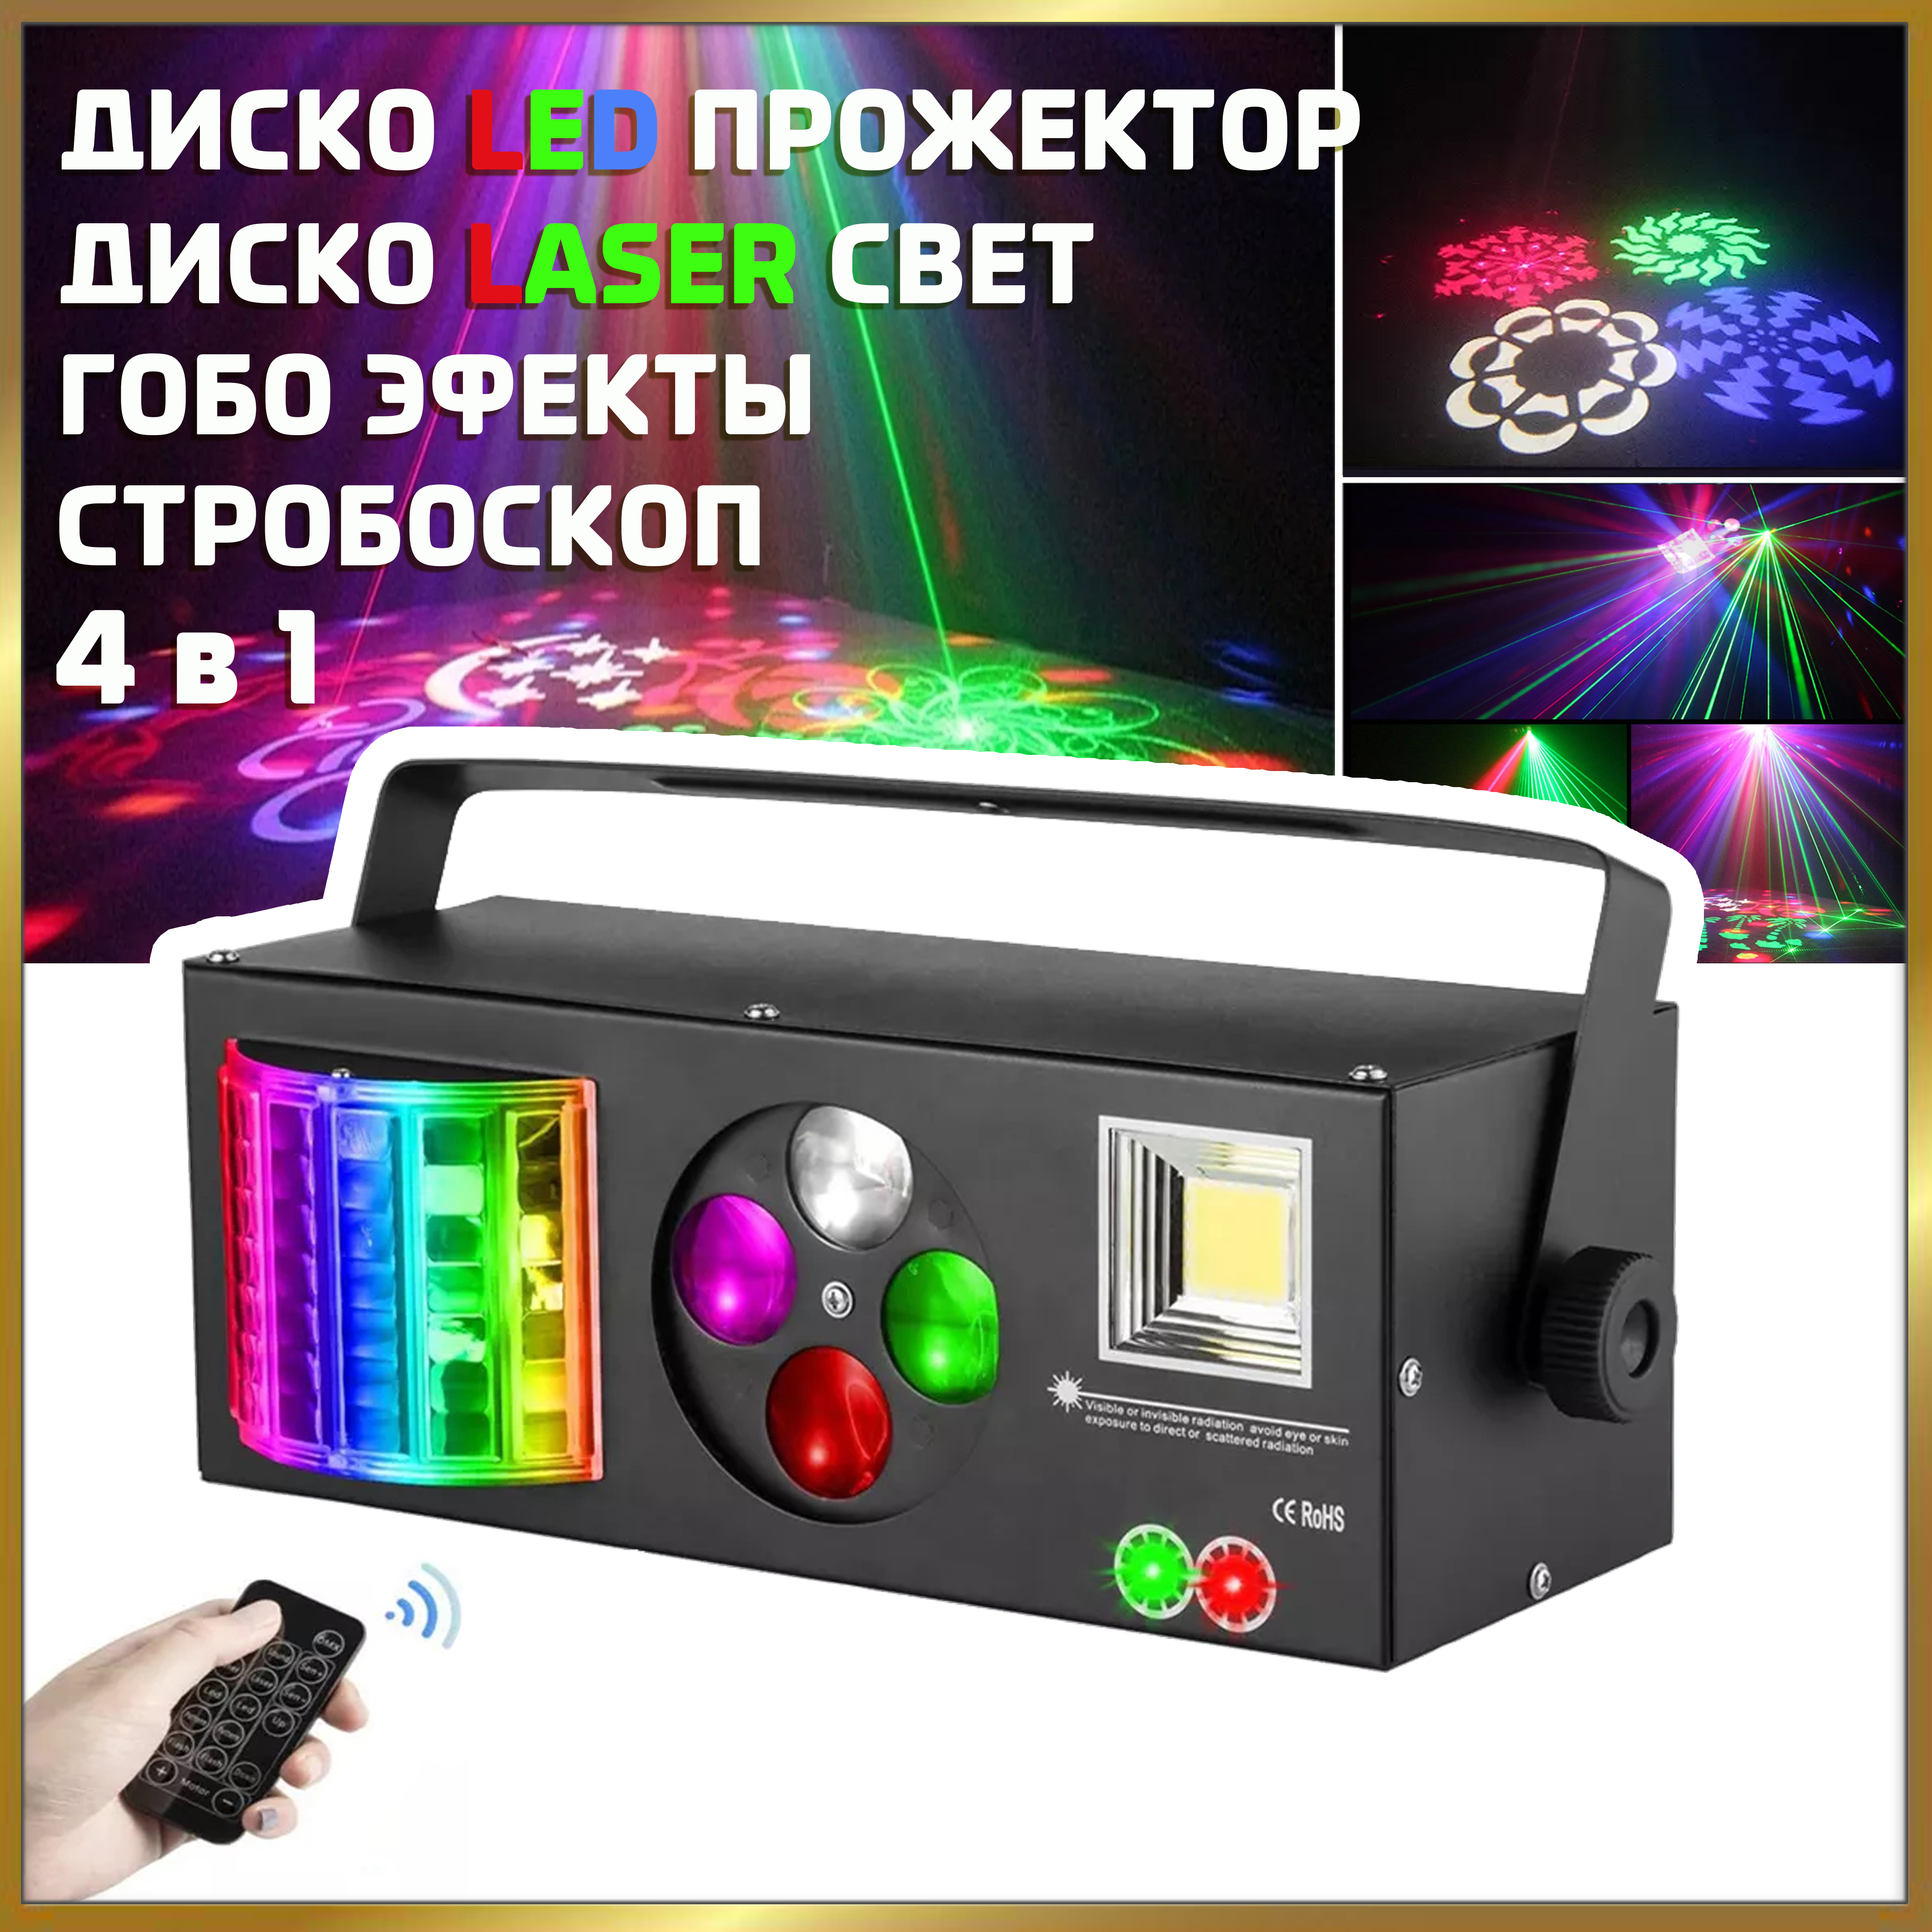 NOIR-audio Disco Laser 3 светомузыка 4 в 1